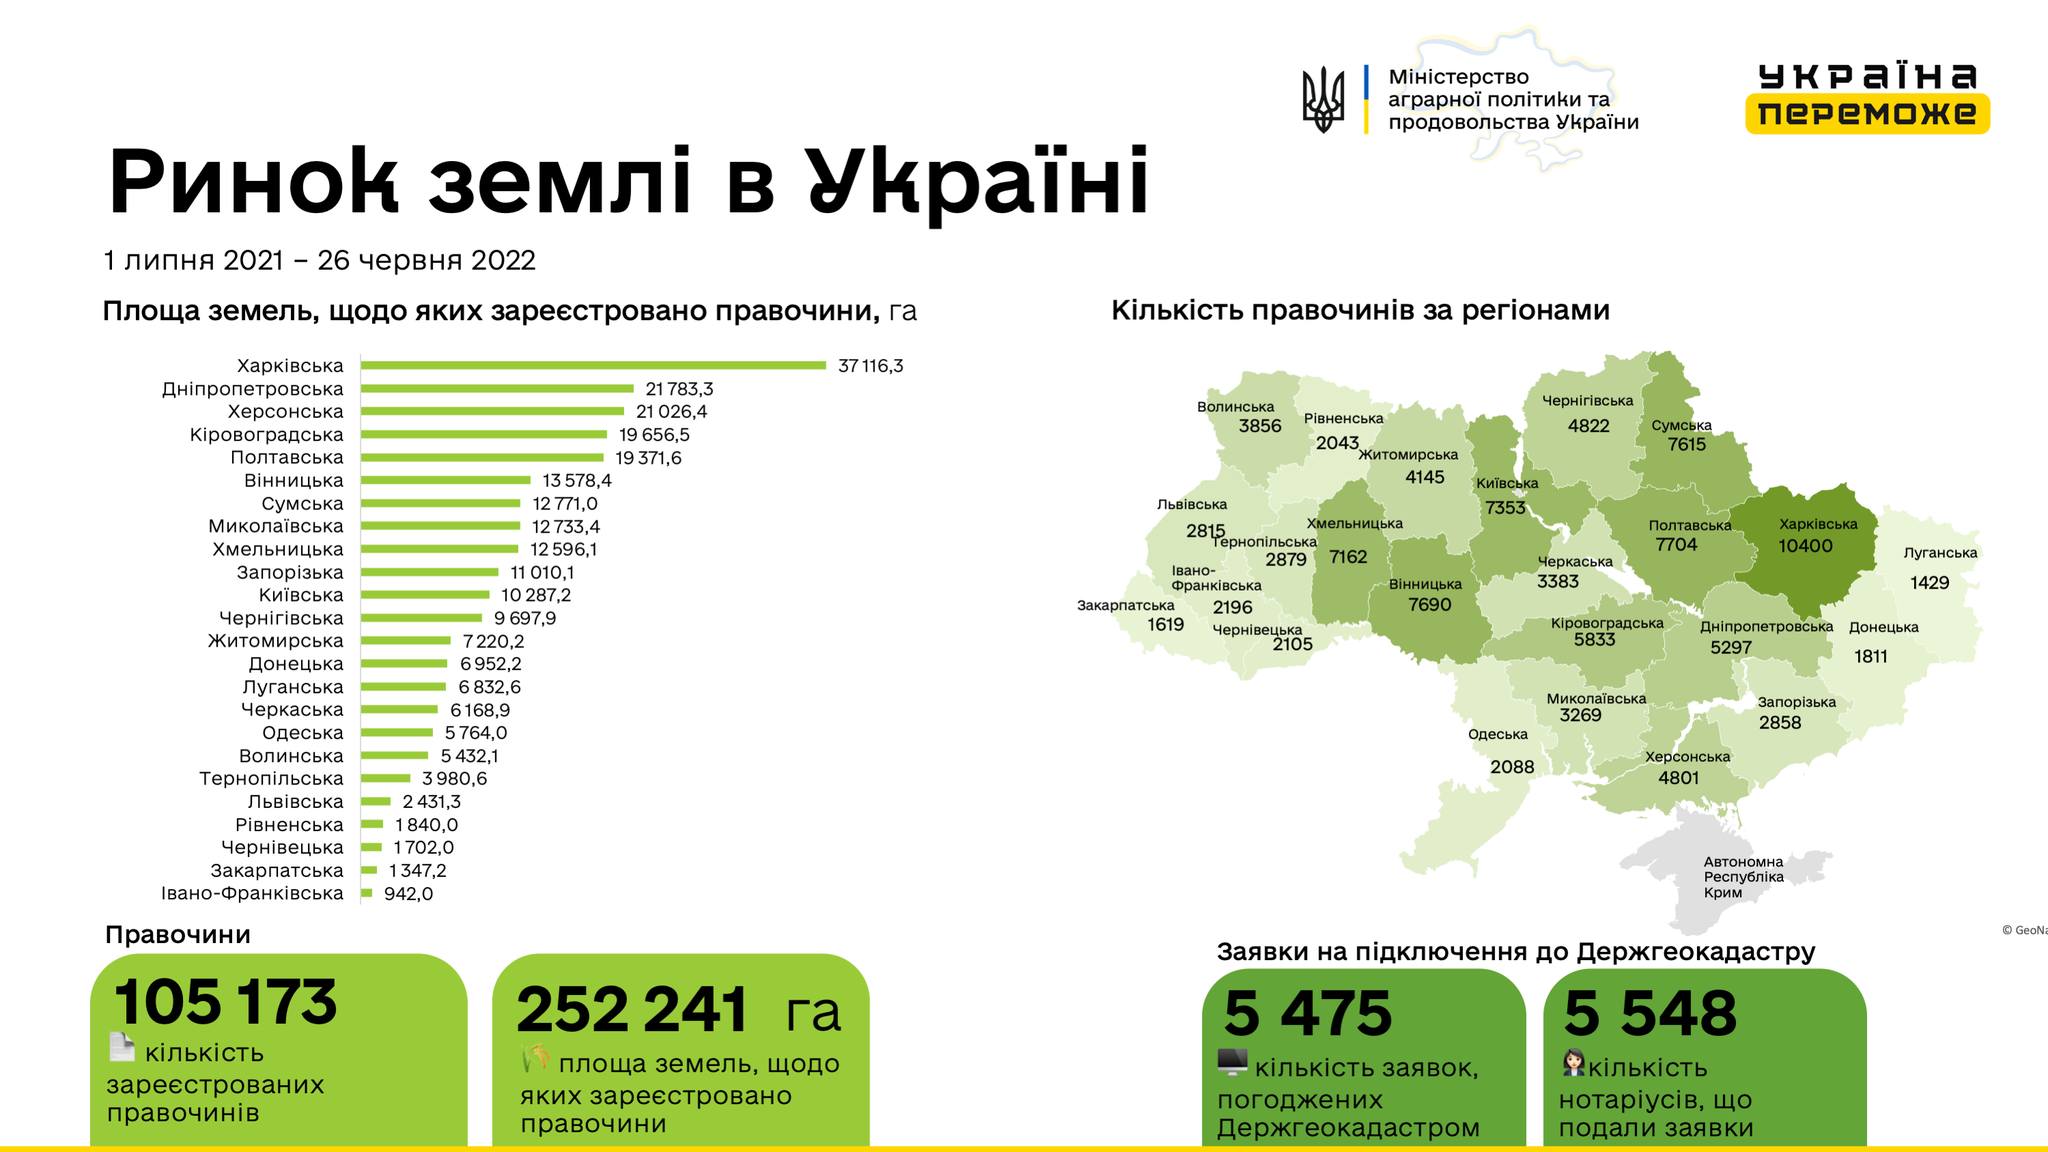 В Україні зареєстровано 105 173 земельні угоди